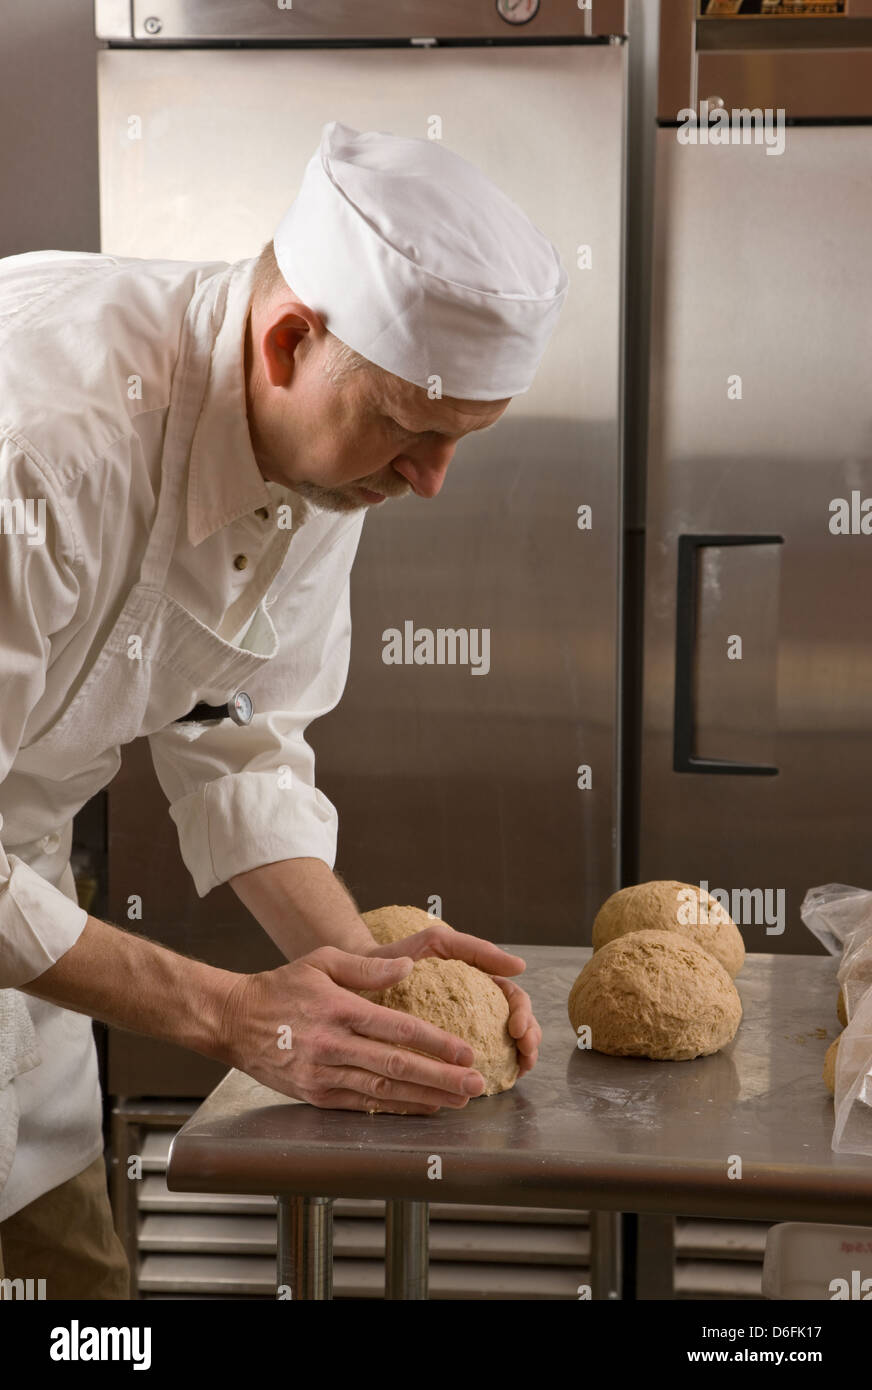 Cocinero profesional Preparando pan fresco en una panadería comercial Foto de stock